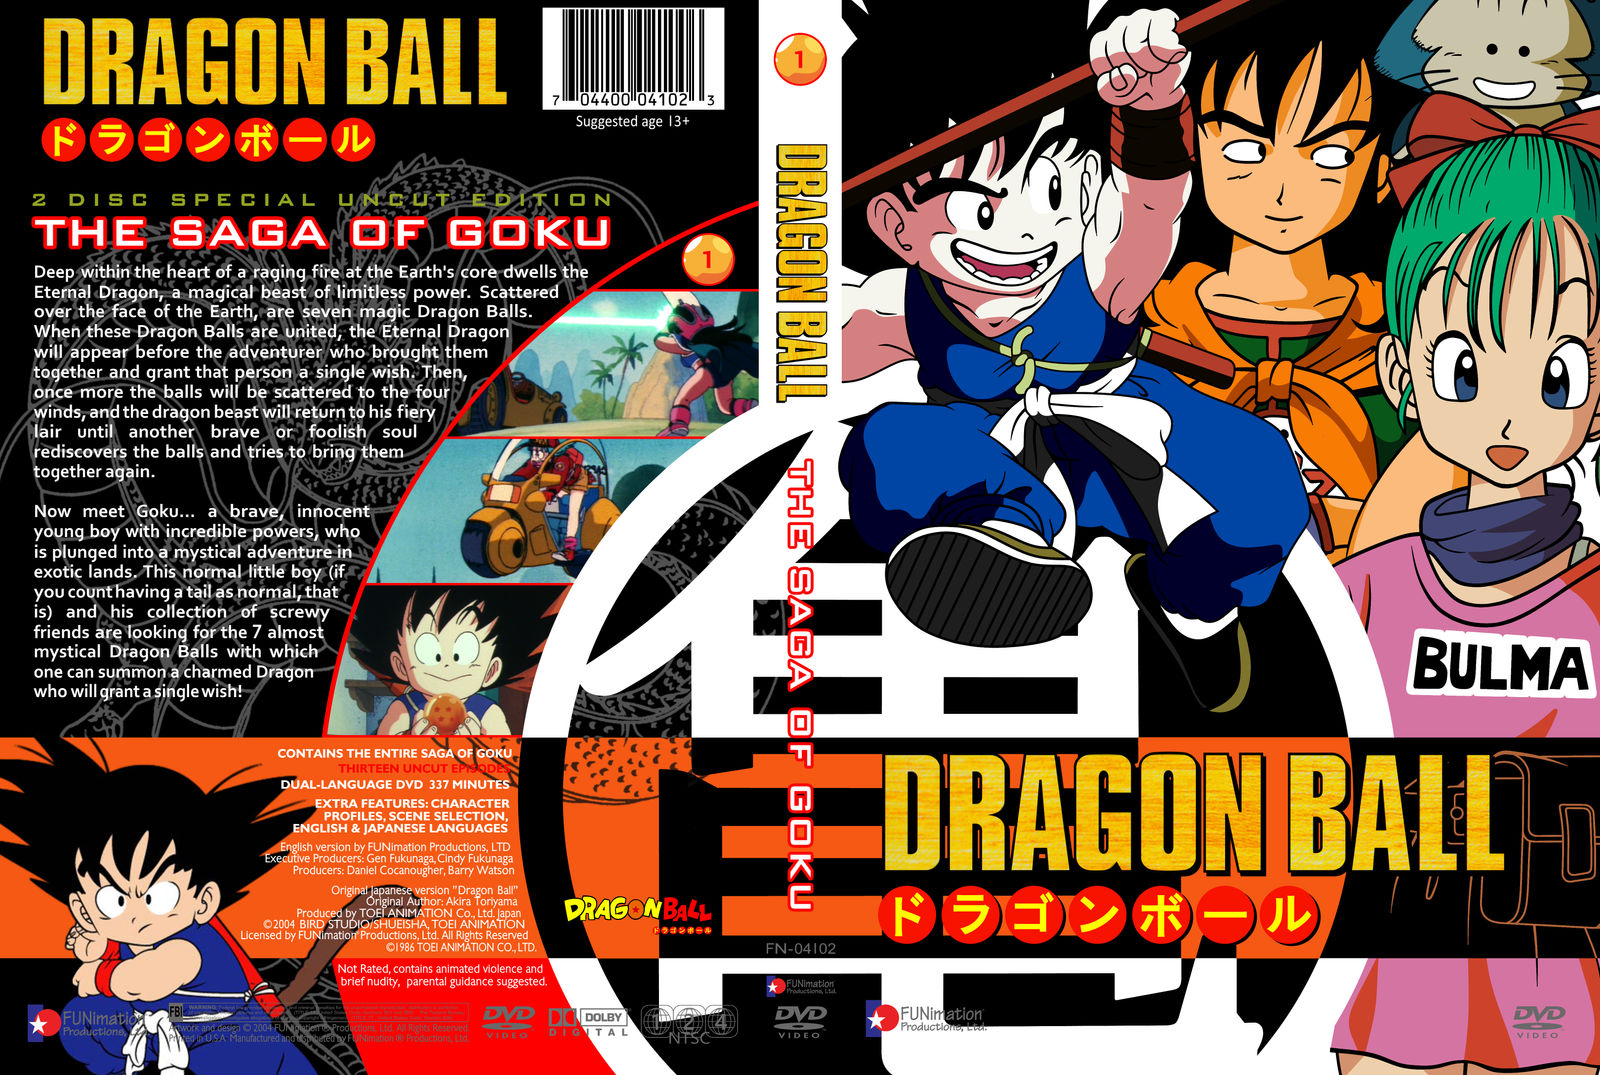 Dragon Ball - The Saga of Goku dvd cover (US) by 4RealAnime on DeviantArt